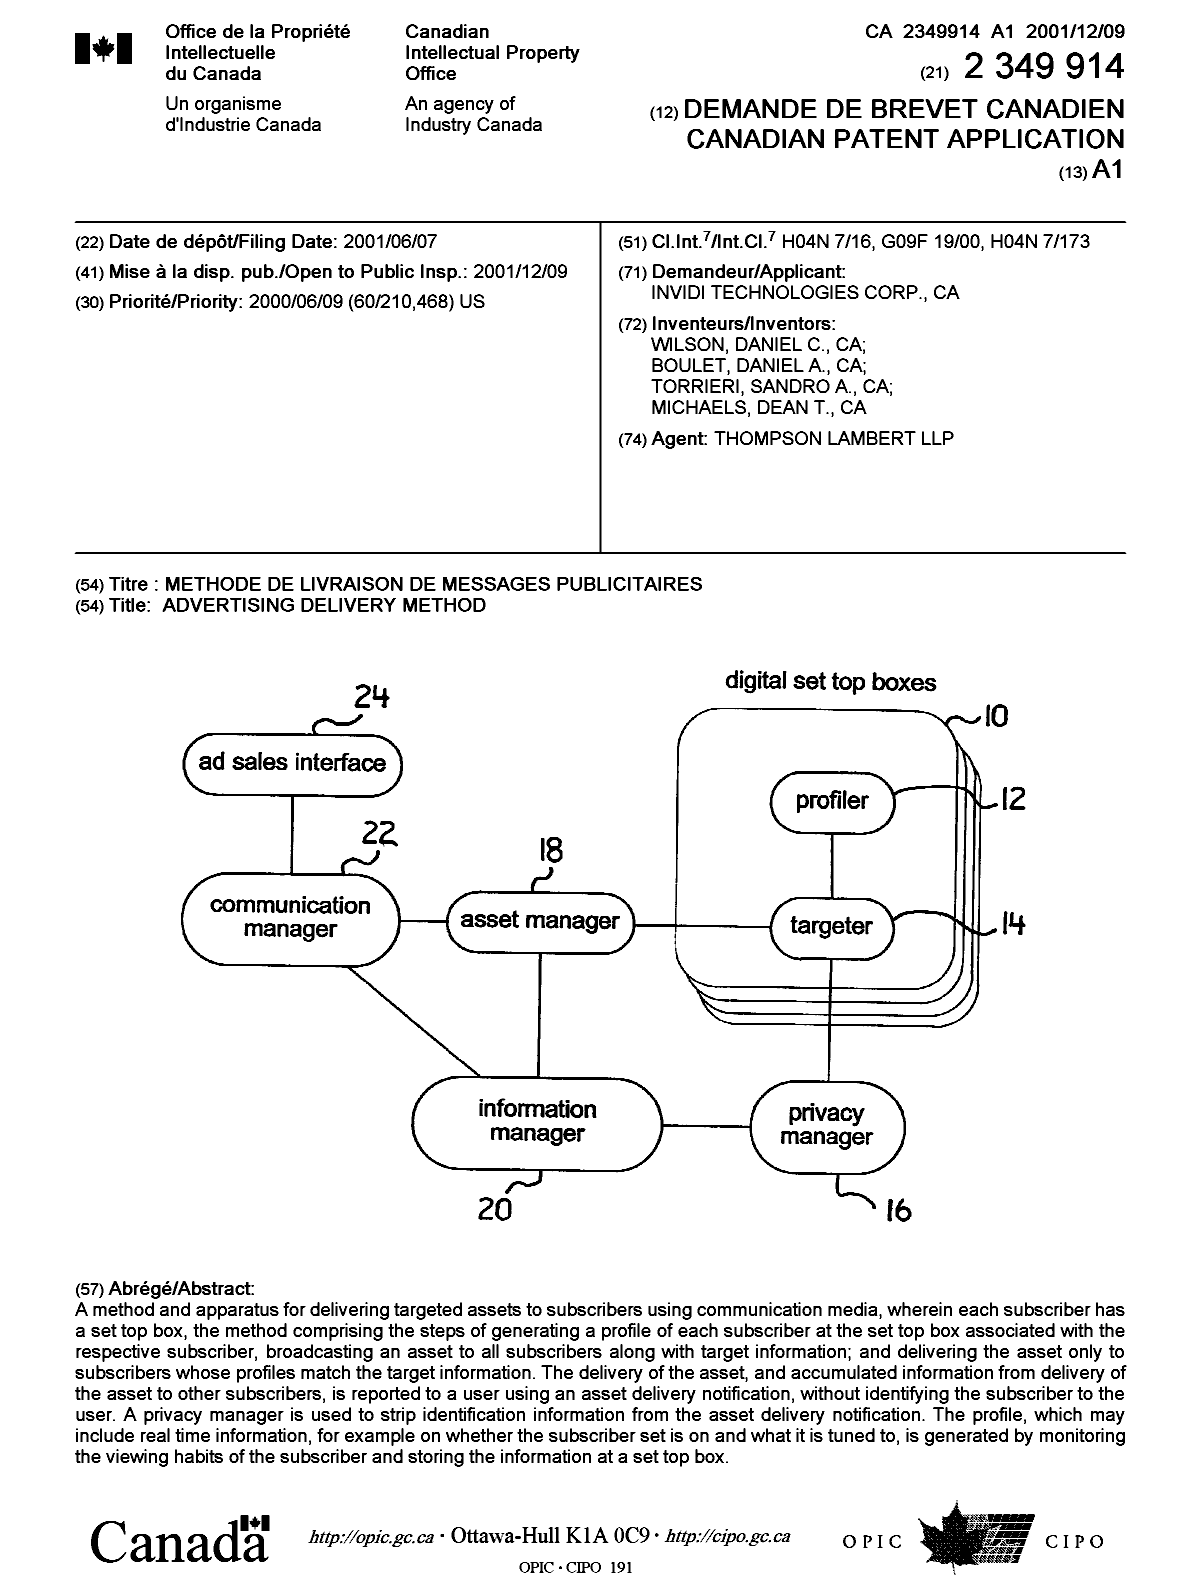 Document de brevet canadien 2349914. Page couverture 20011207. Image 1 de 1